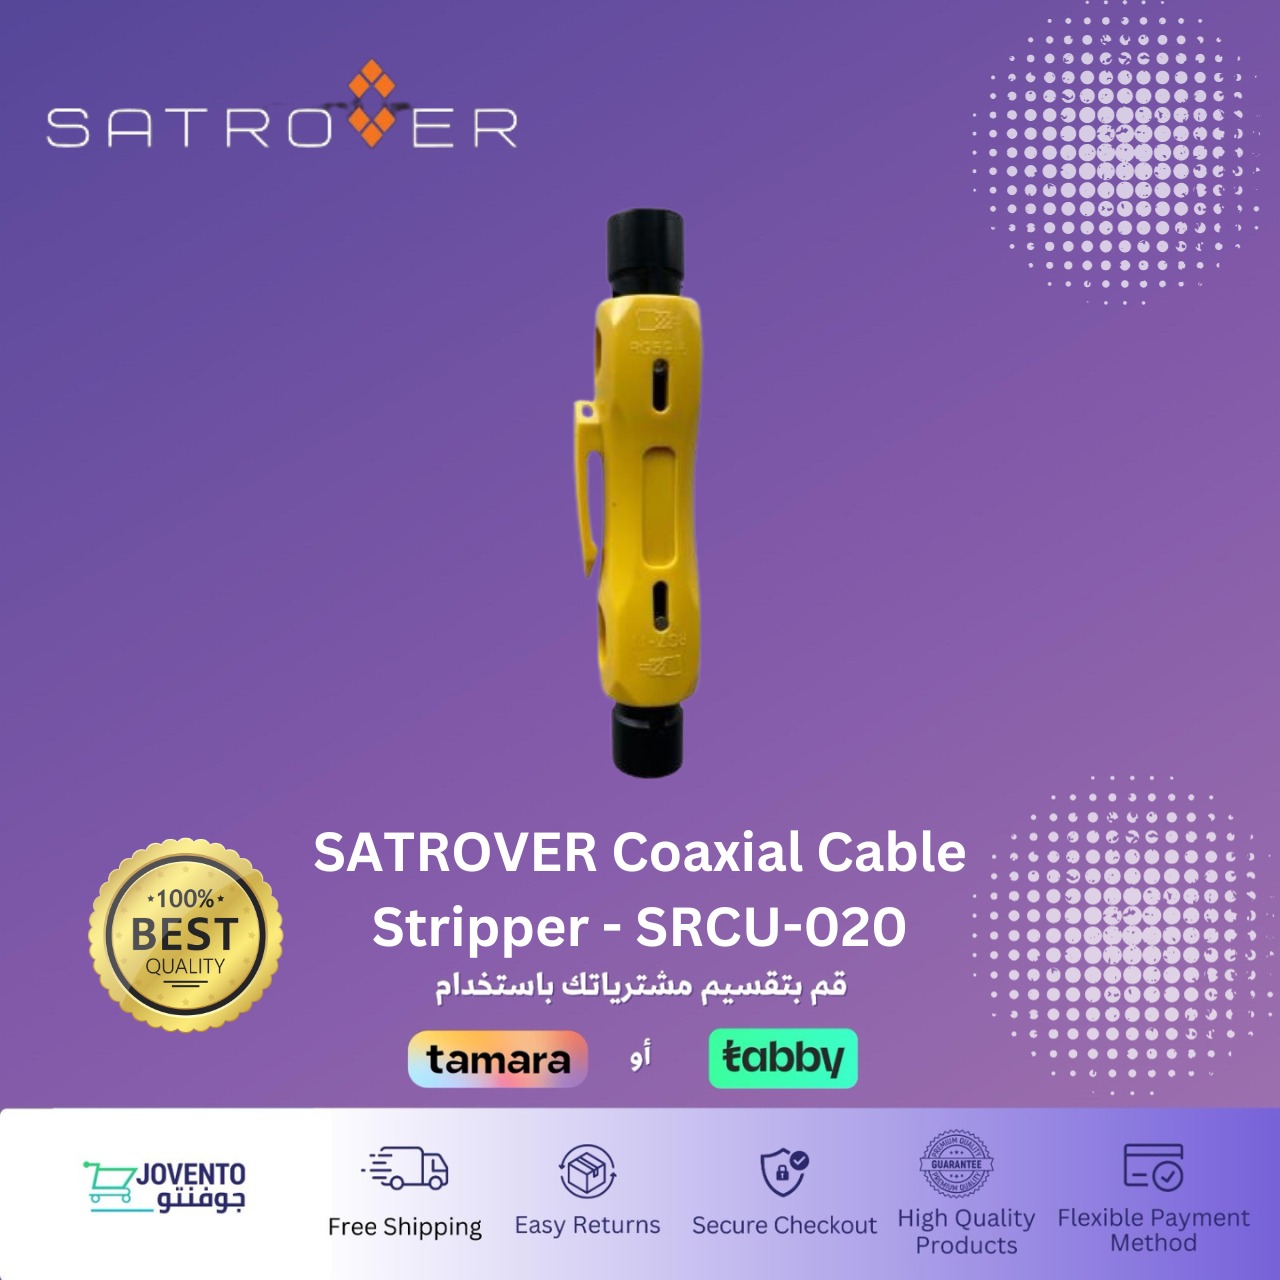 SATROVER Coaxial Cable Stripper - SRCU-020